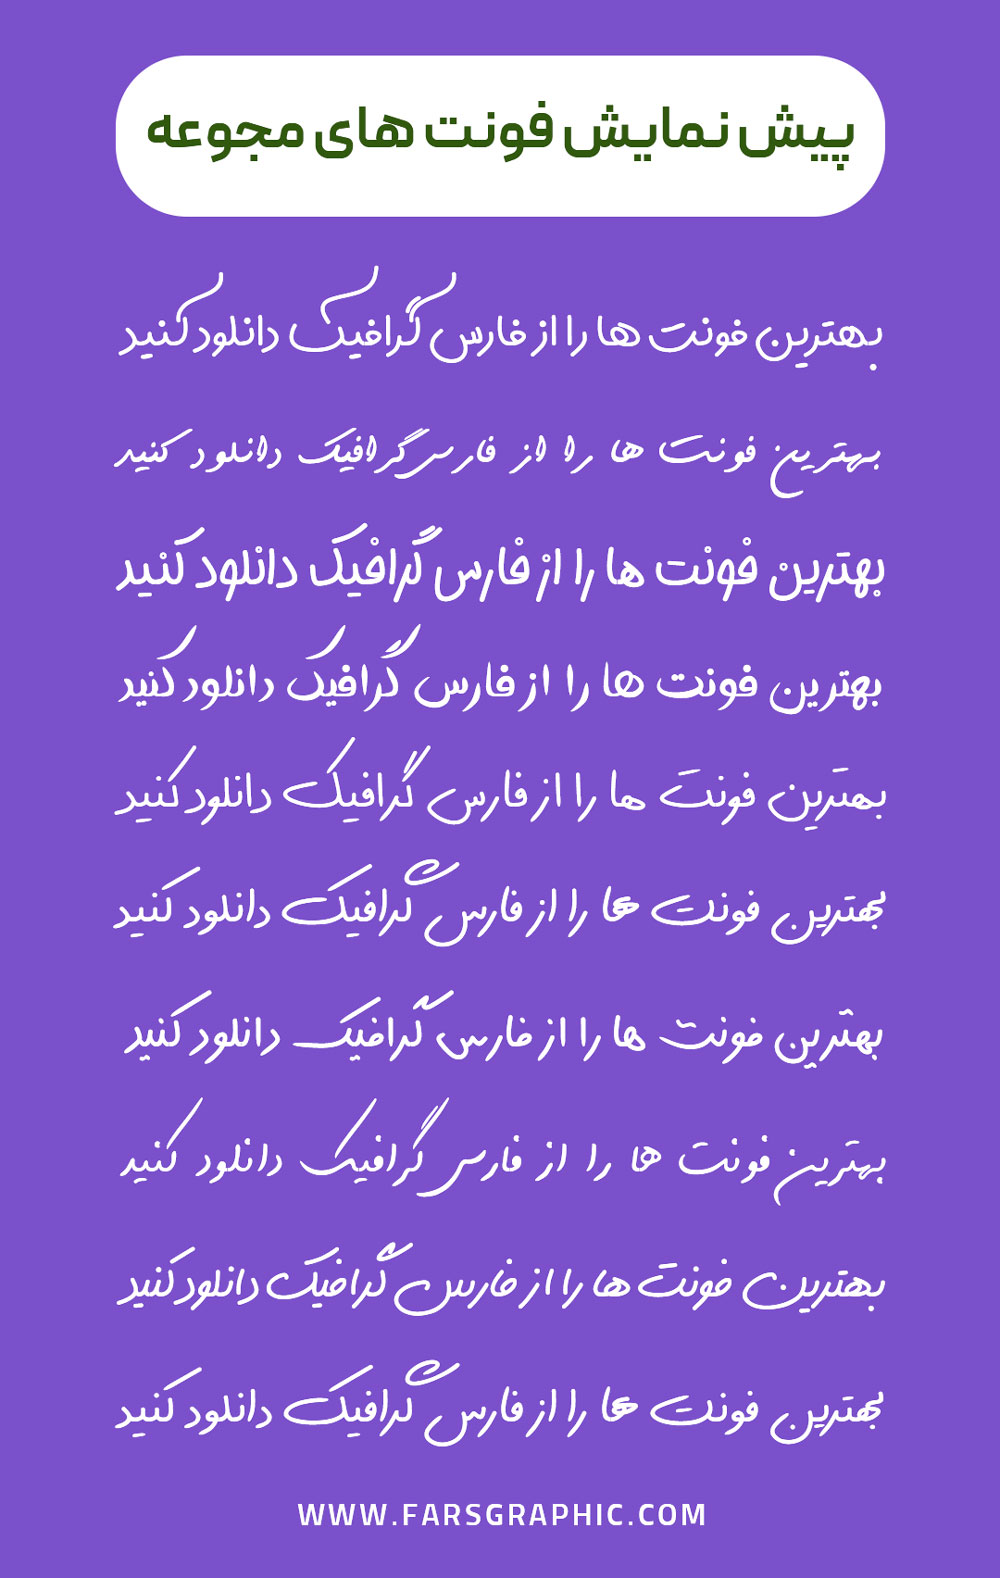 دانلود مجموعه 20 فونت دست نویس فارسی